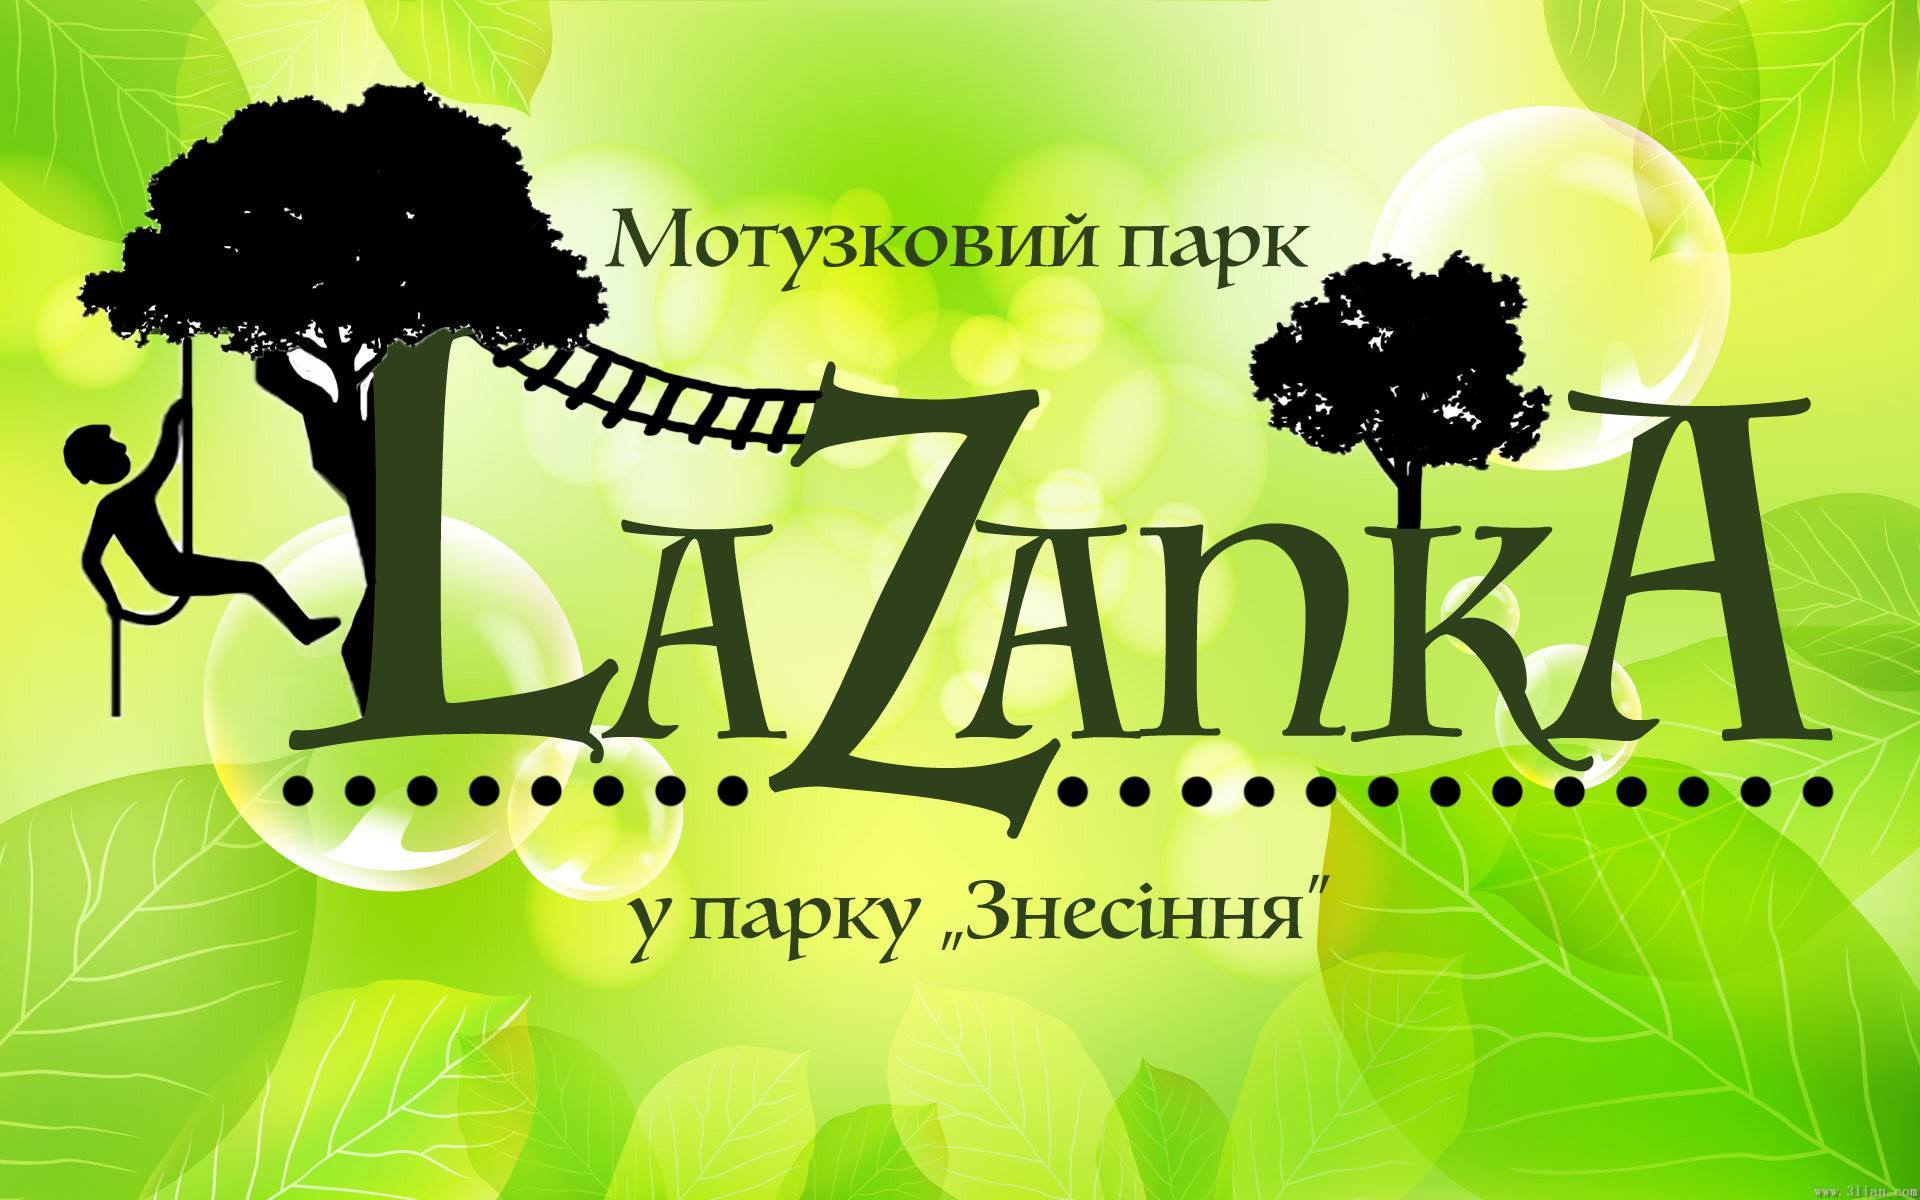 Довідник - 1 - Мотузковий парк "LaZanka" у парку "Знесіння"